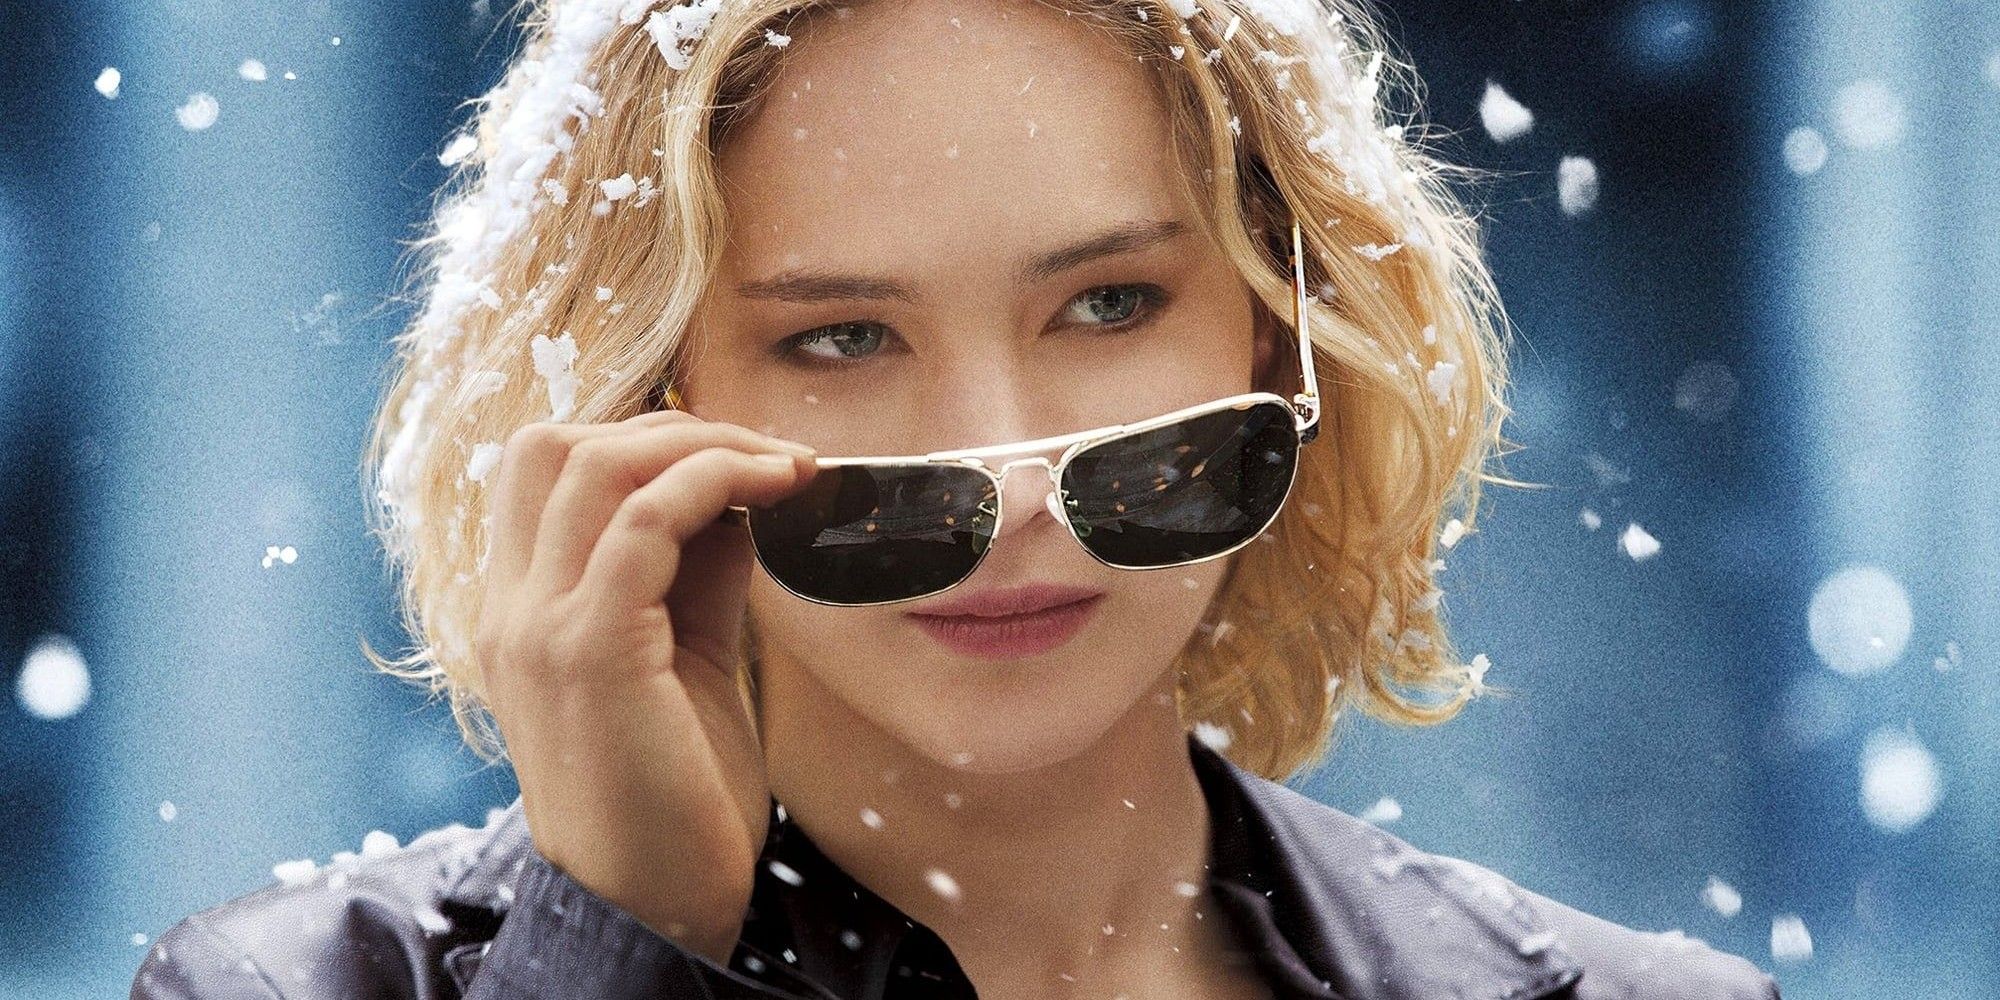 Jennifer Lawrence's new role in the film breaks a 9year streak after